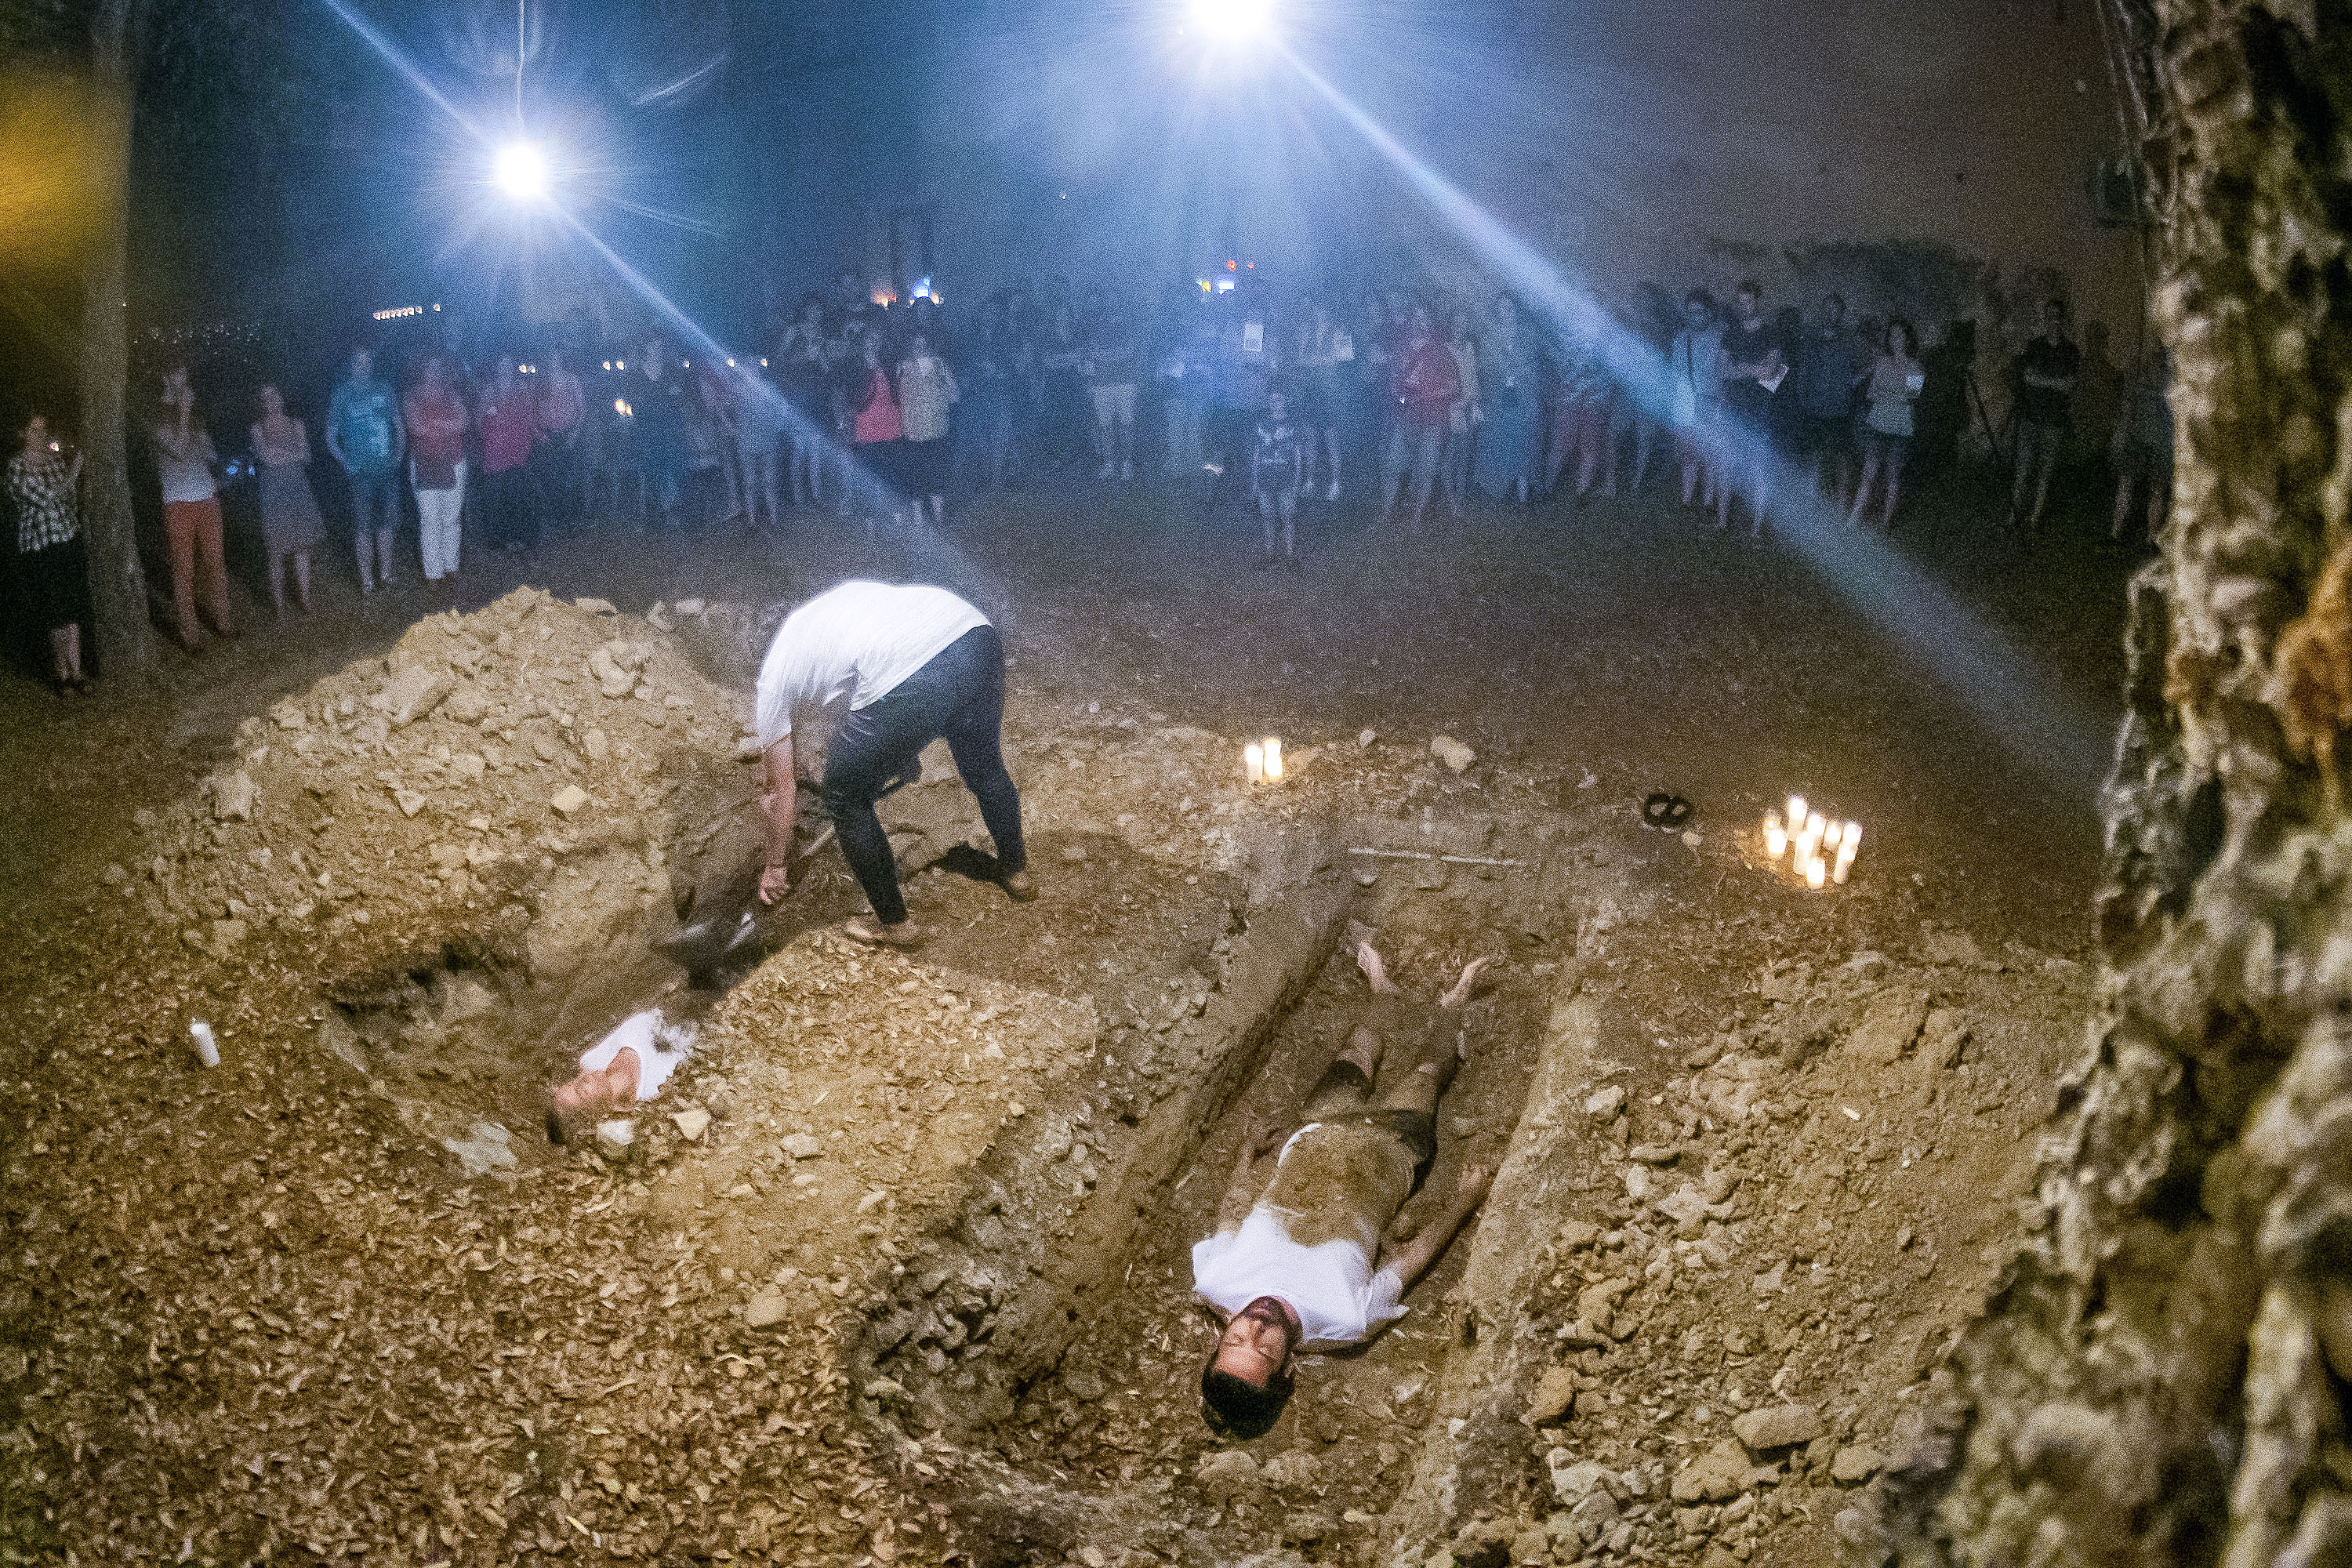 El recorregut acabava amb els protagonistes en un forat excavat a terra, com una tomba